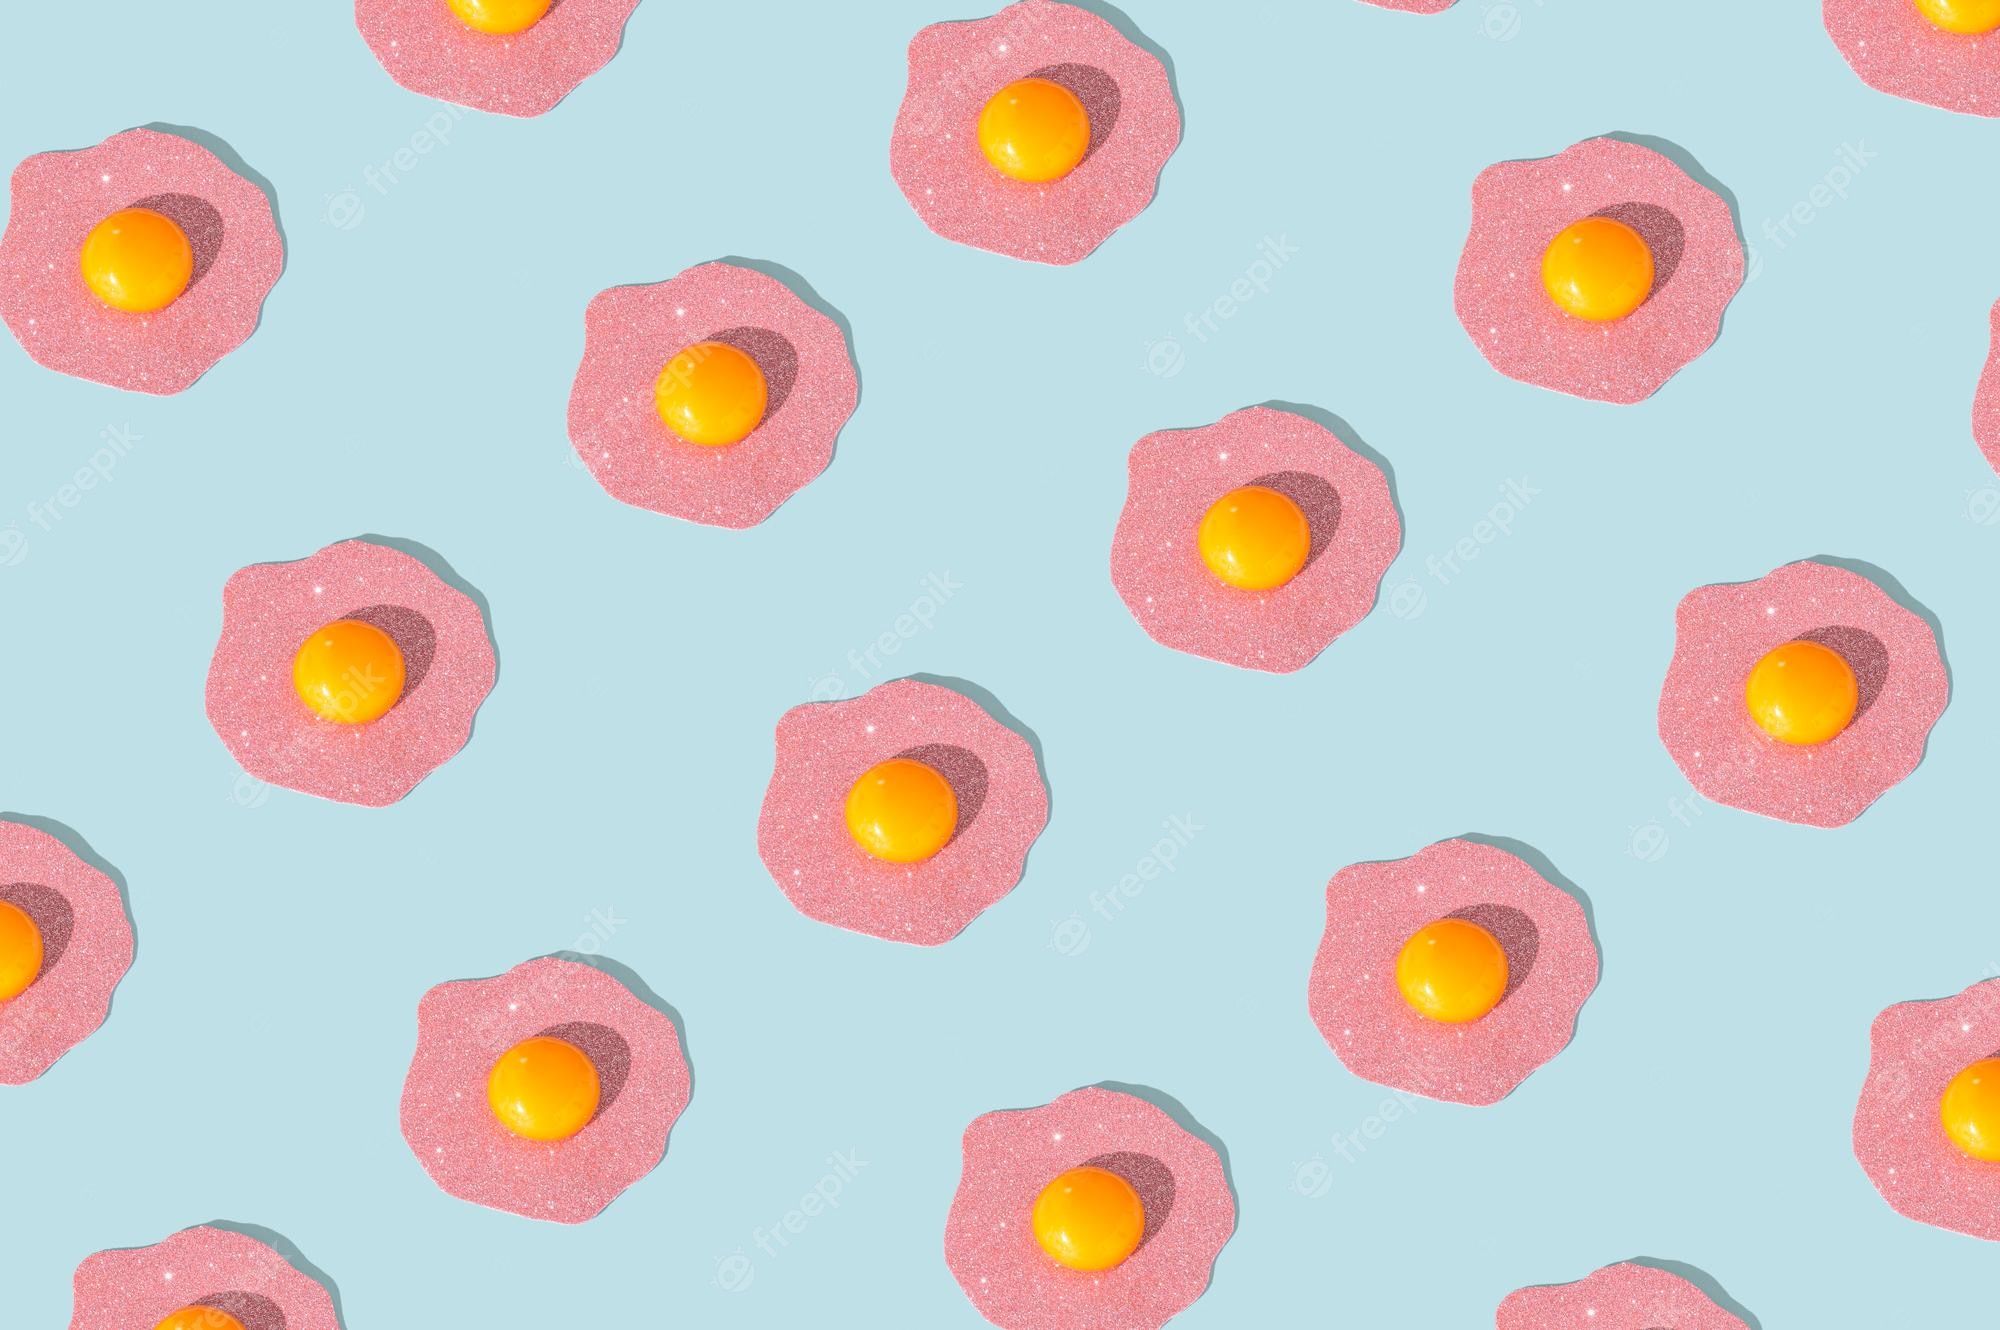 Egg Wallpaper Image